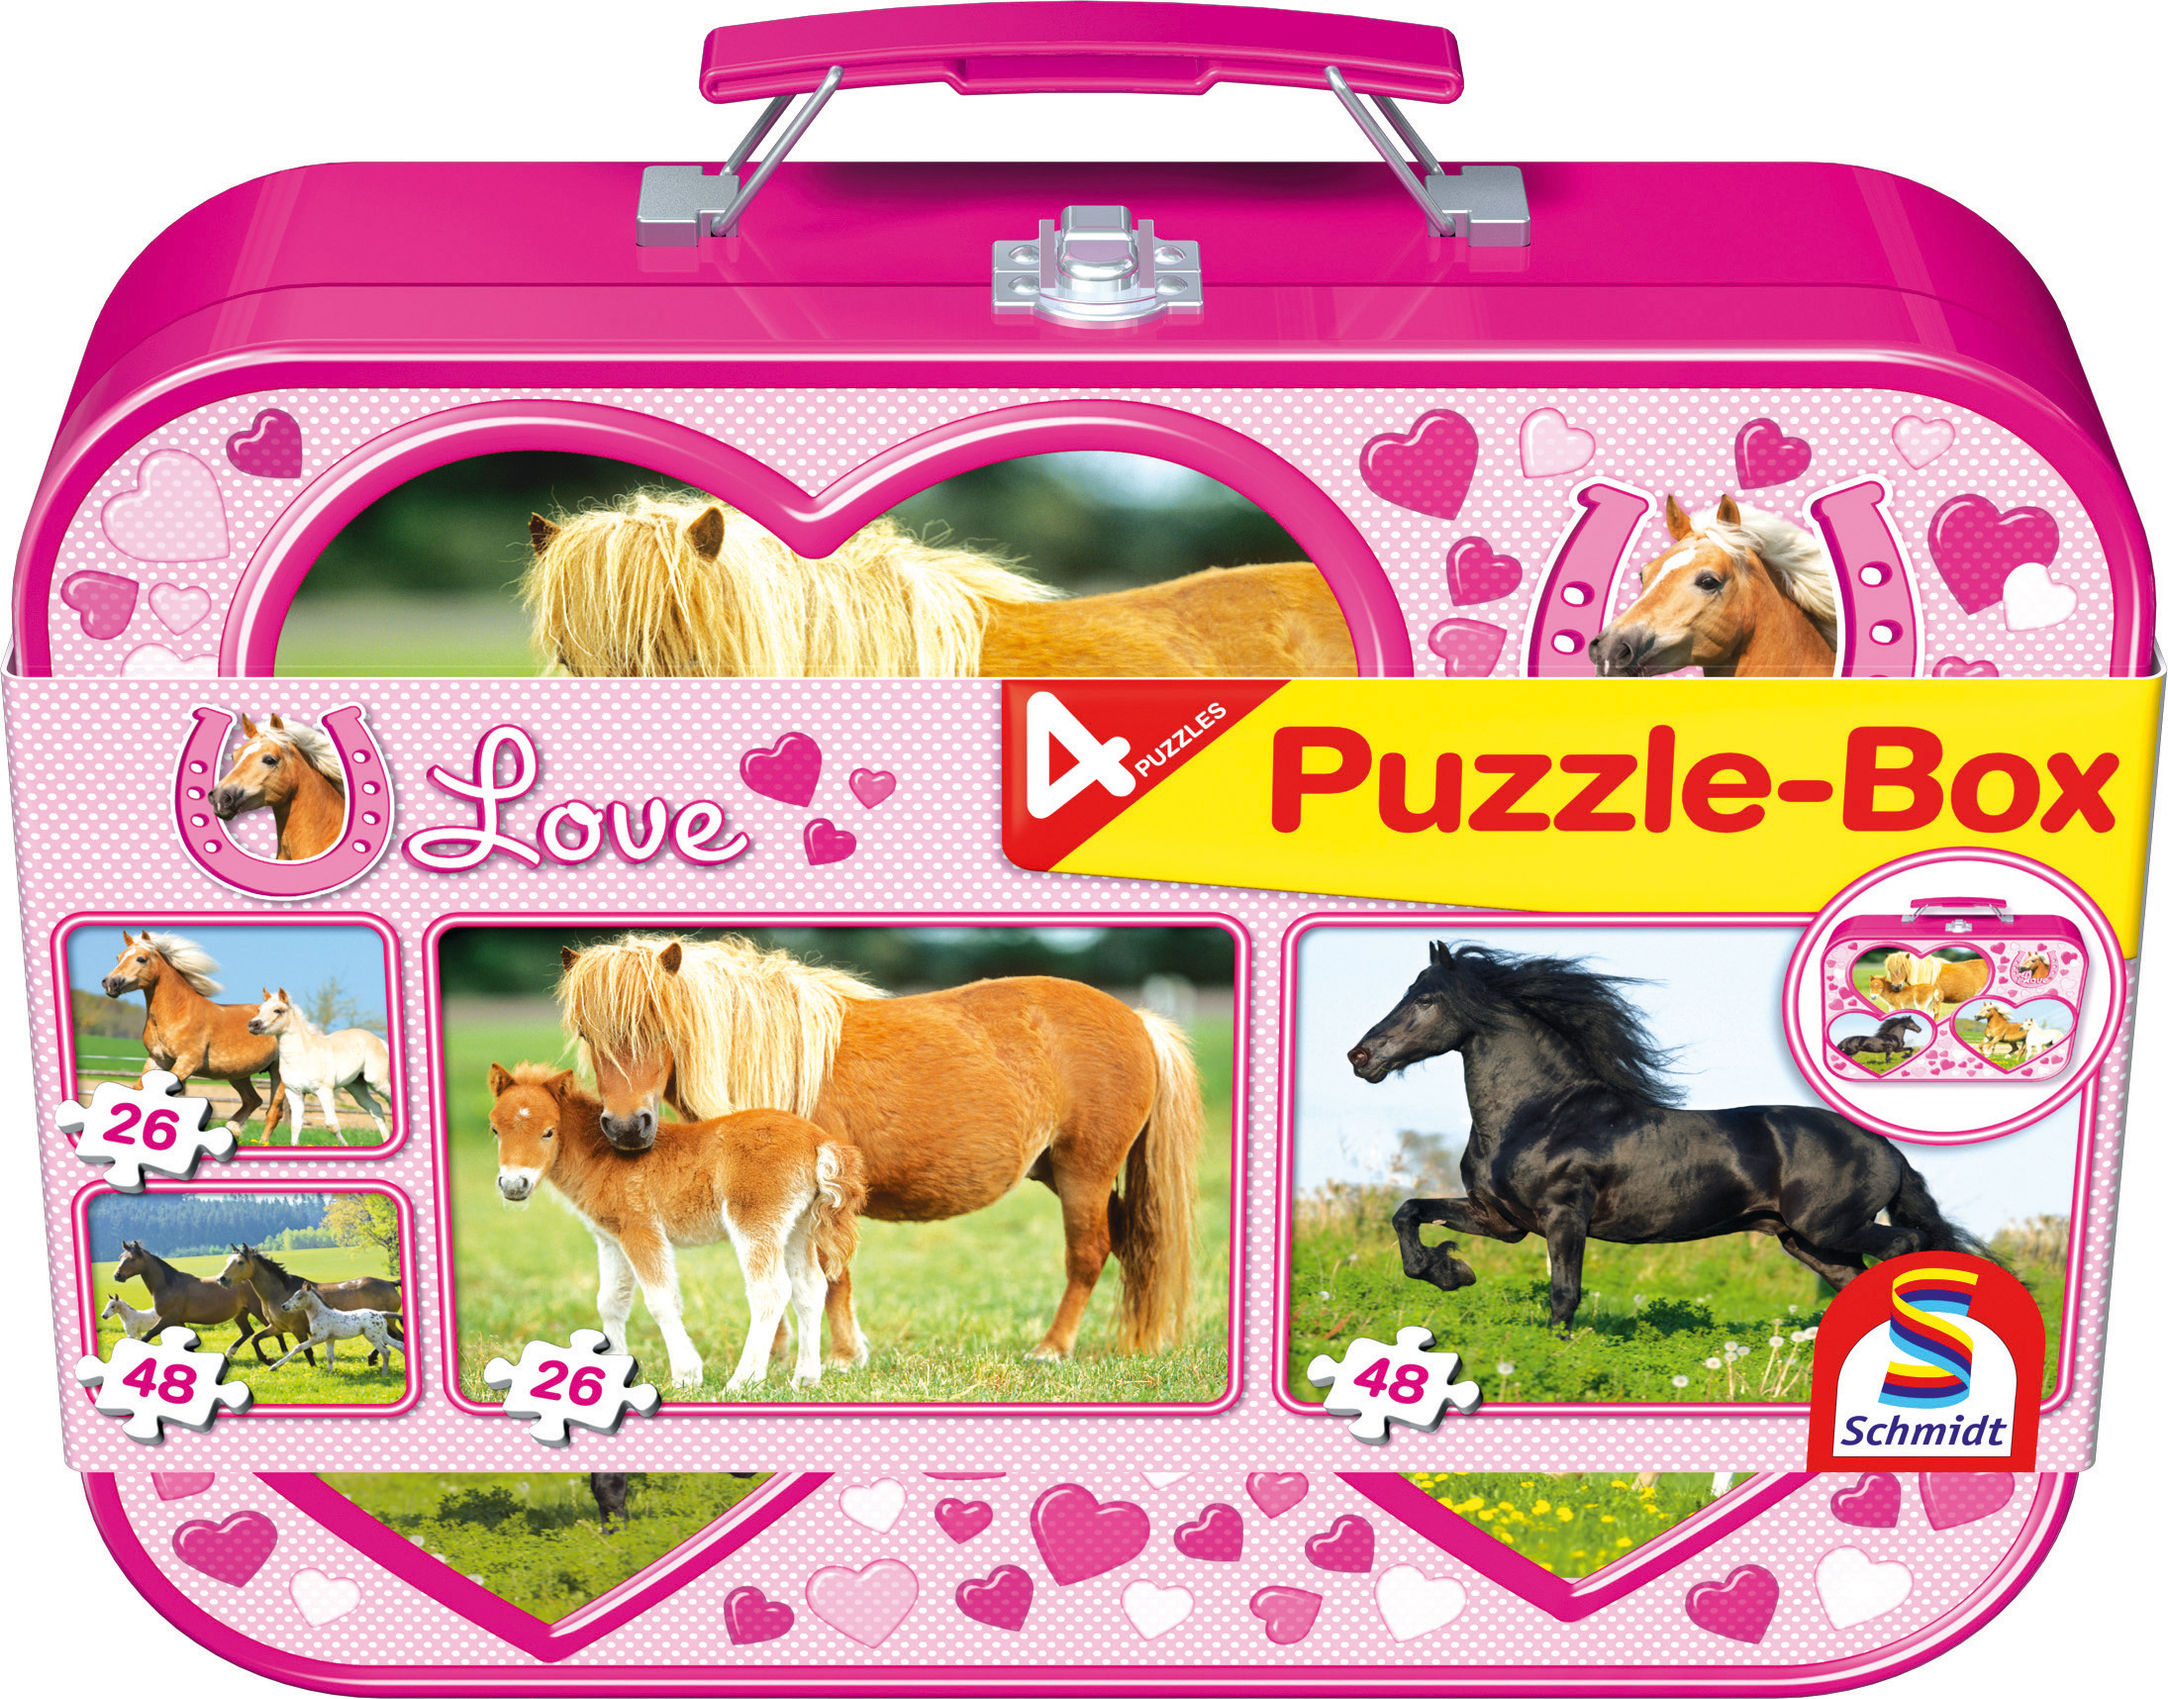 Schmidt Puzzlekoffer Pferd, 2 x 26 u. 2 x 48 Teile | Weltbild.de